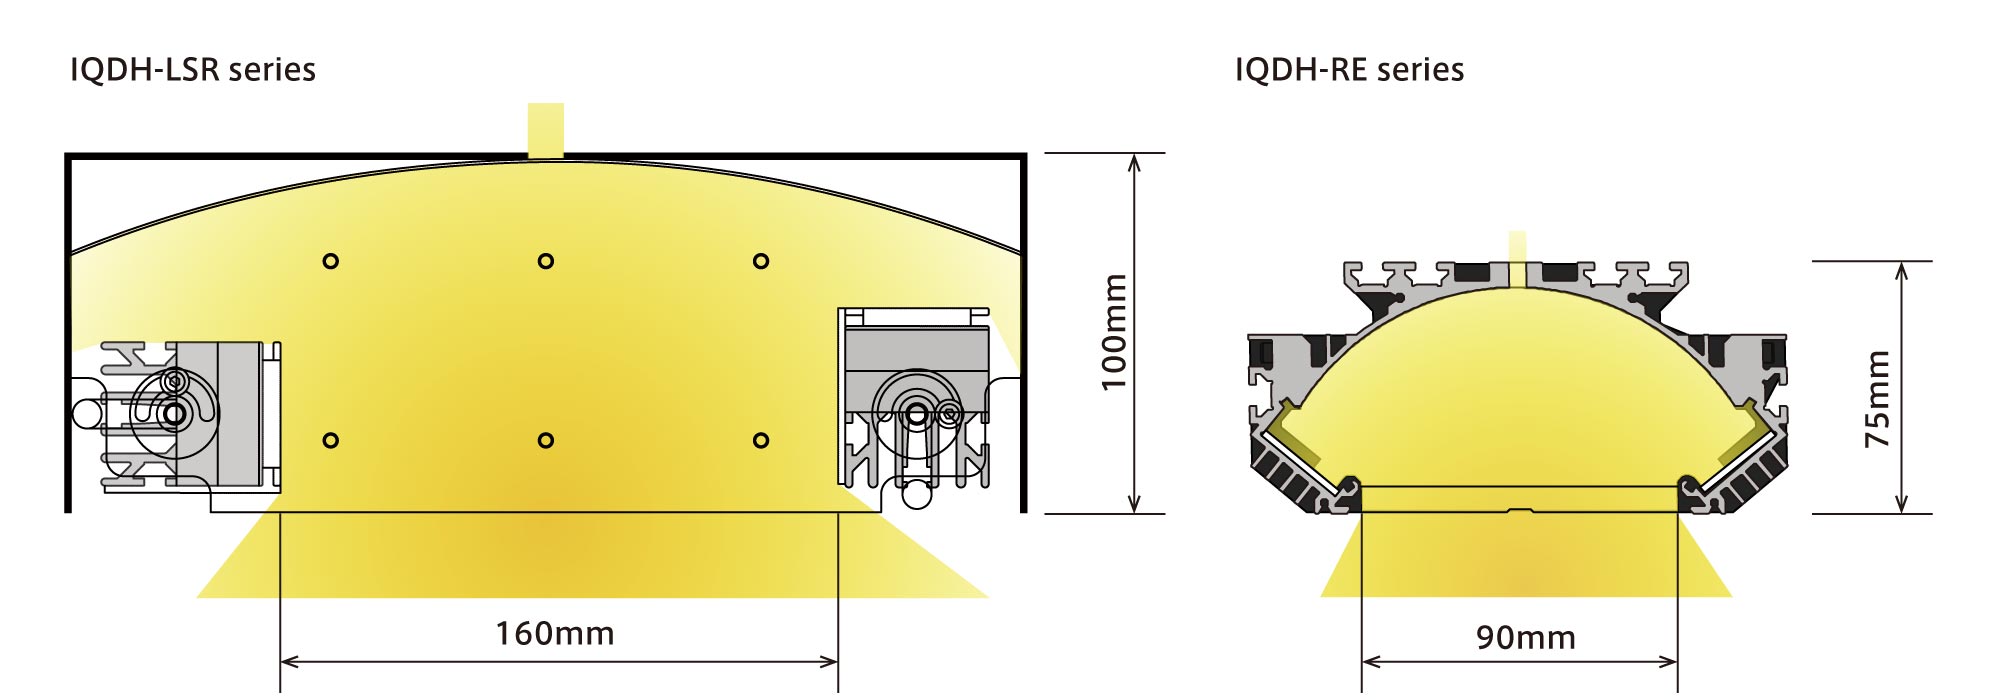 IQDH-RE Product Description 02